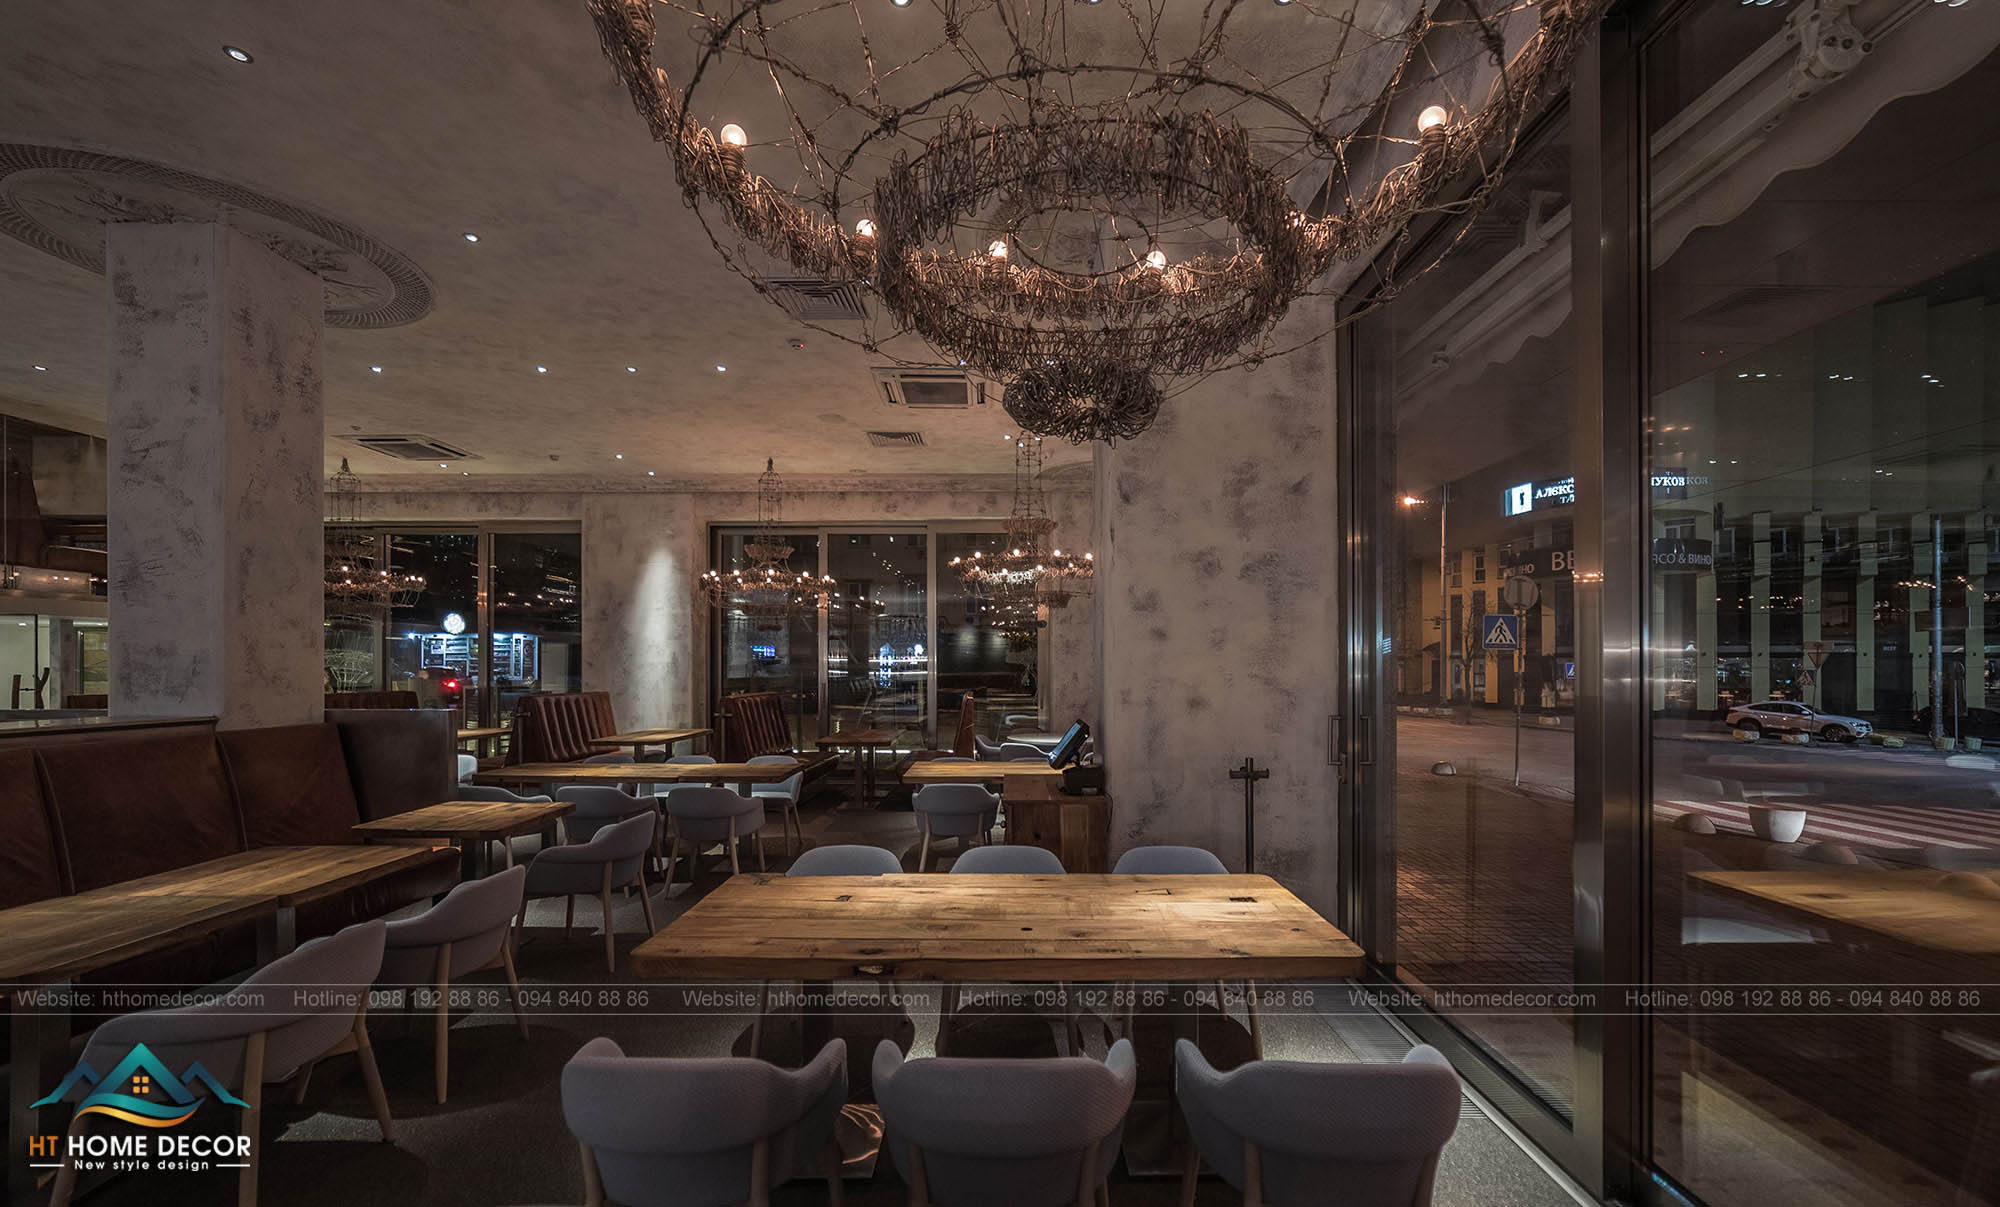 Cửa kính được thiết kế trong không gian này càng làm cho không gian nhà hàng thêm cổ điển và ấn tượng.